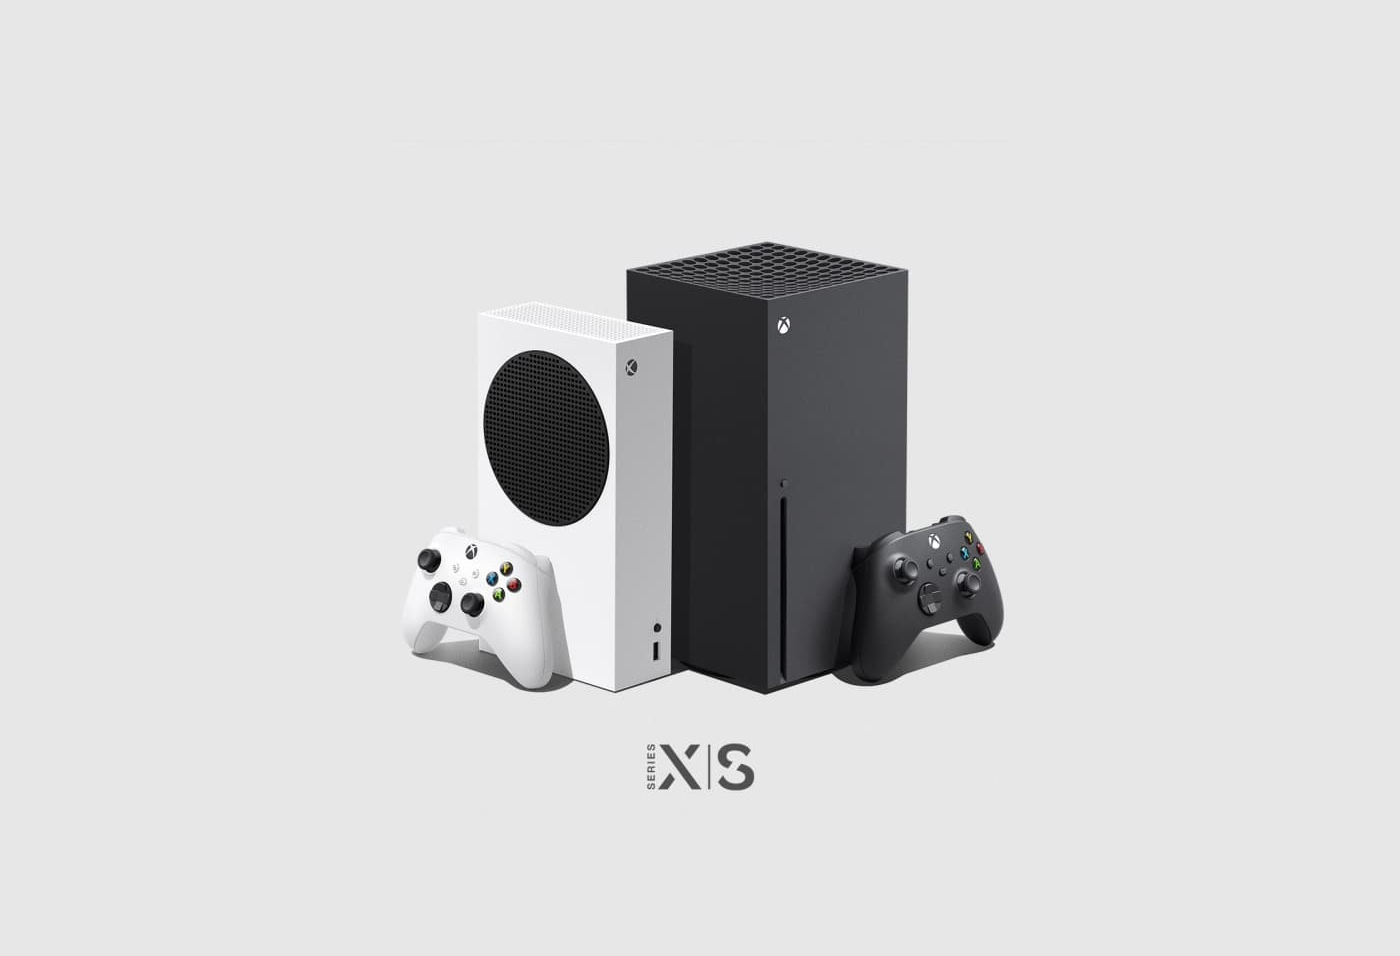 Pré-Venda Dos Xbox Series X|S Começa Nesta Terça, 12h